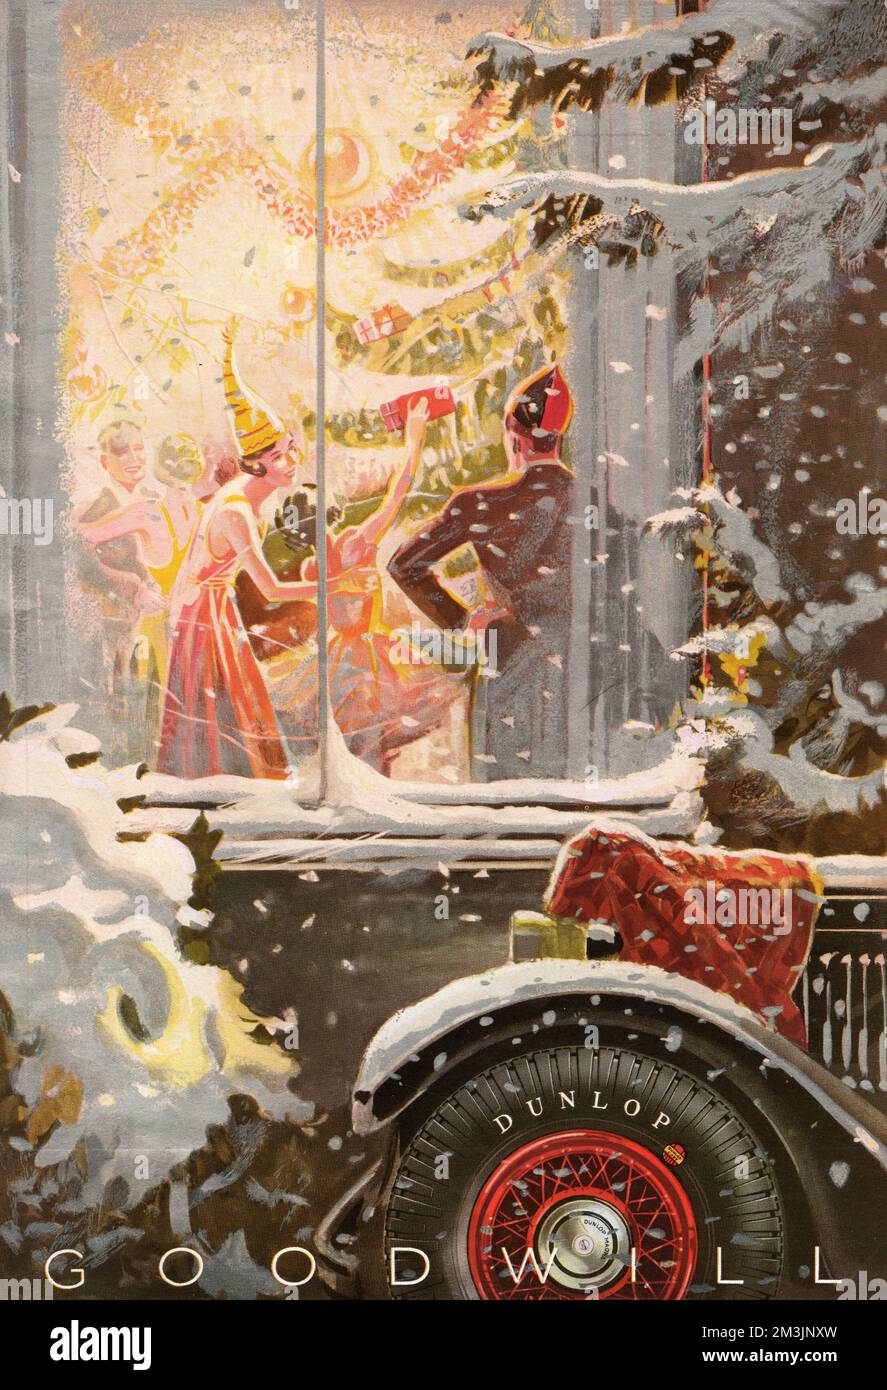 Parcheggiato all'esterno di una casa dove è in corso una vivace festa di Natale - notare la coperta sopra il radiatore... Data: 1933 Foto Stock